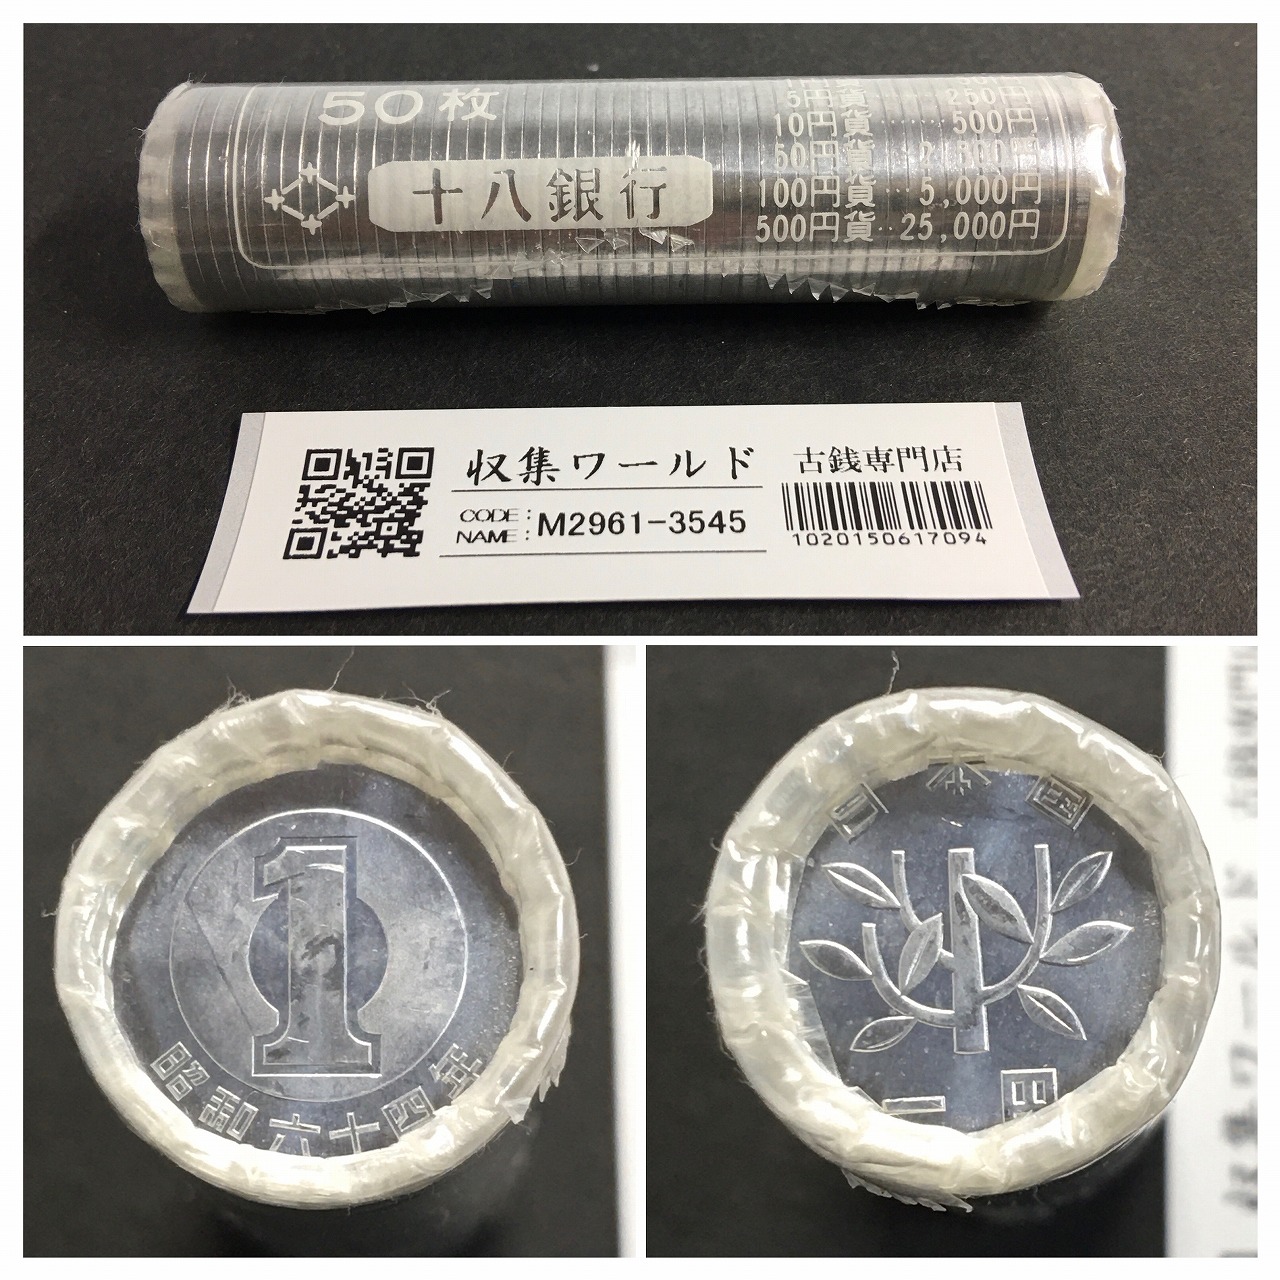 1円アルミ貨 S64特年(1989) 希少十八銀行ロール 50枚入り 完封品